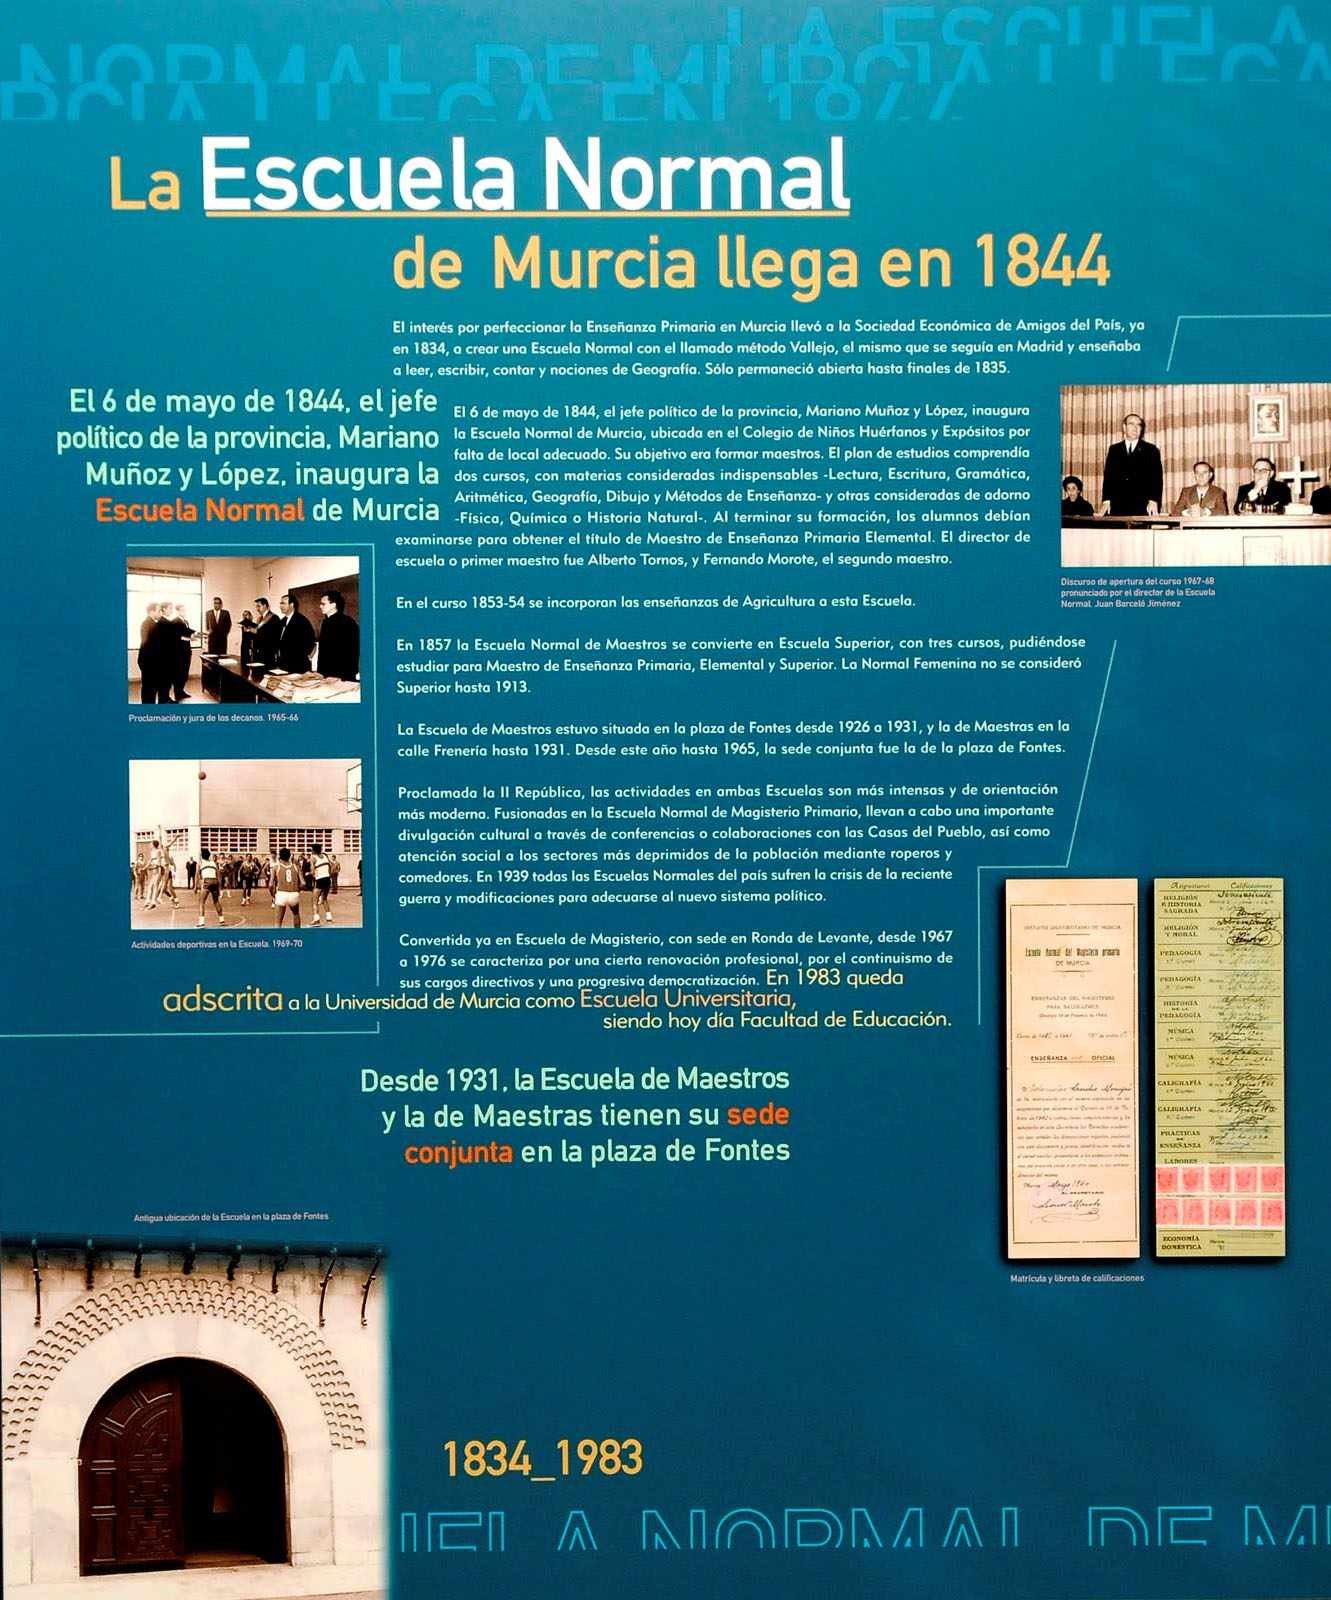 La Escuela Normal de Murcia llega en 1844